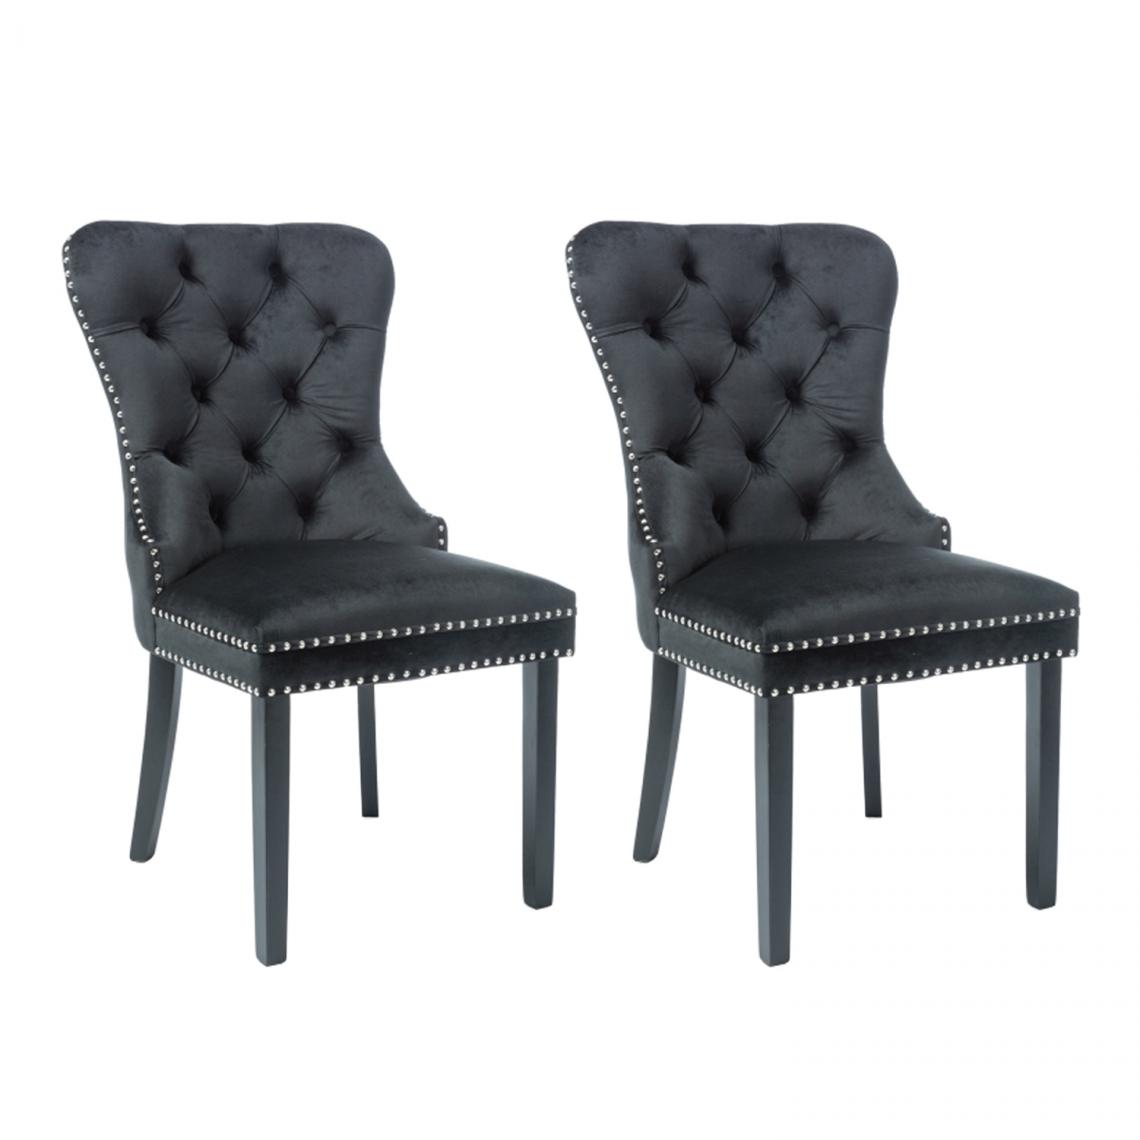 Hucoco - AMANDI - Lot de 2 chaises en tissu velouté -98x56x45 cm - Structure en bois - Style glamour - Noir - Chaises